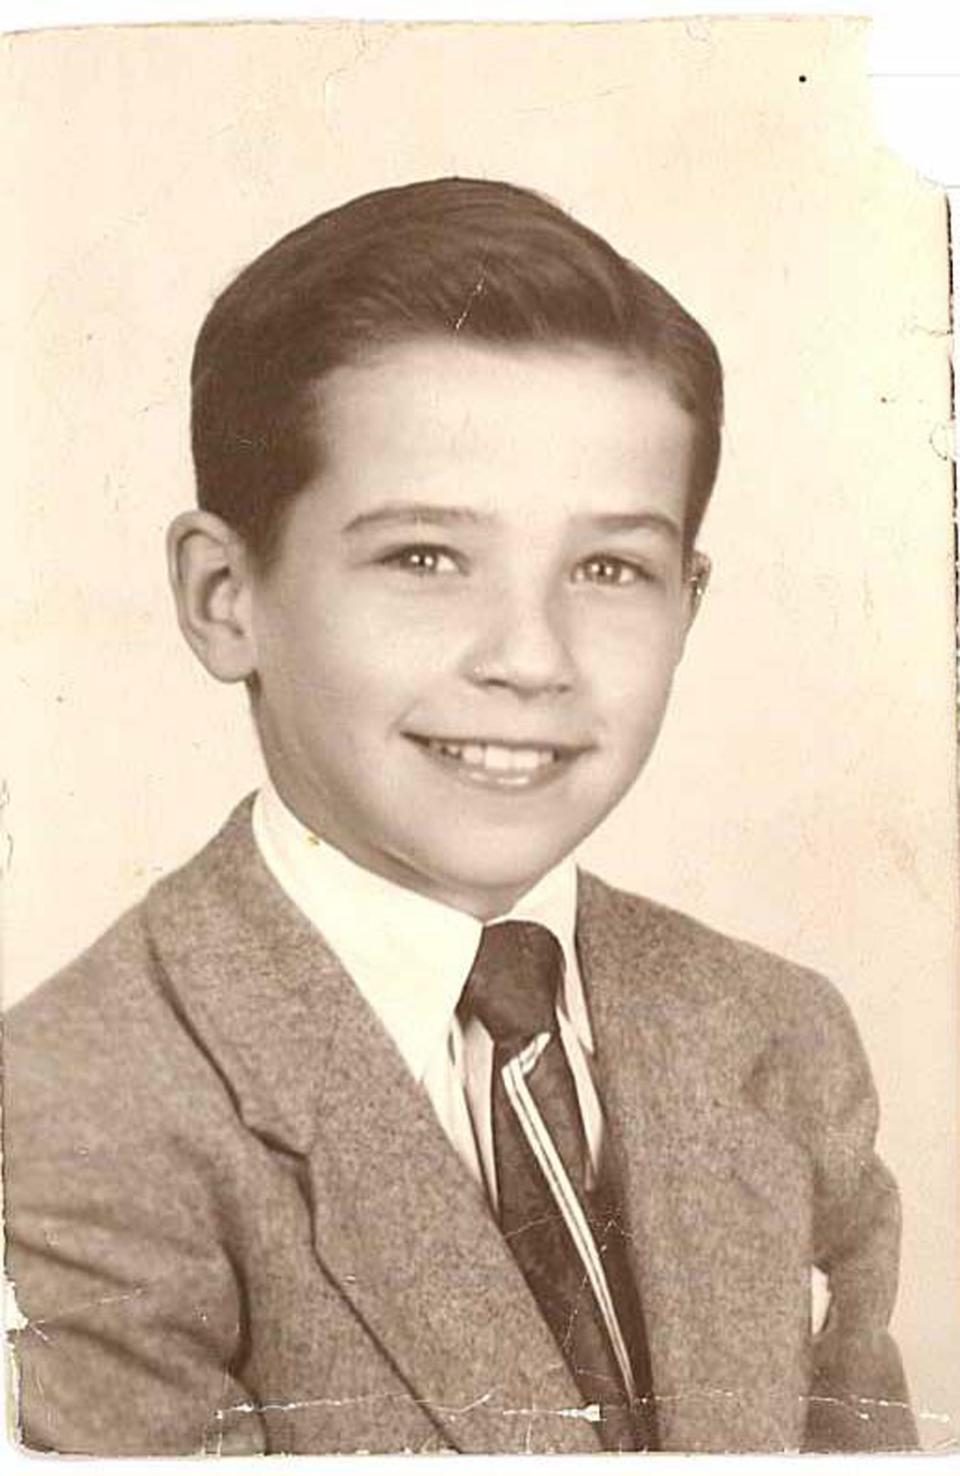 Joe Biden as a boy. When he was a child, he struggled with a stutter.